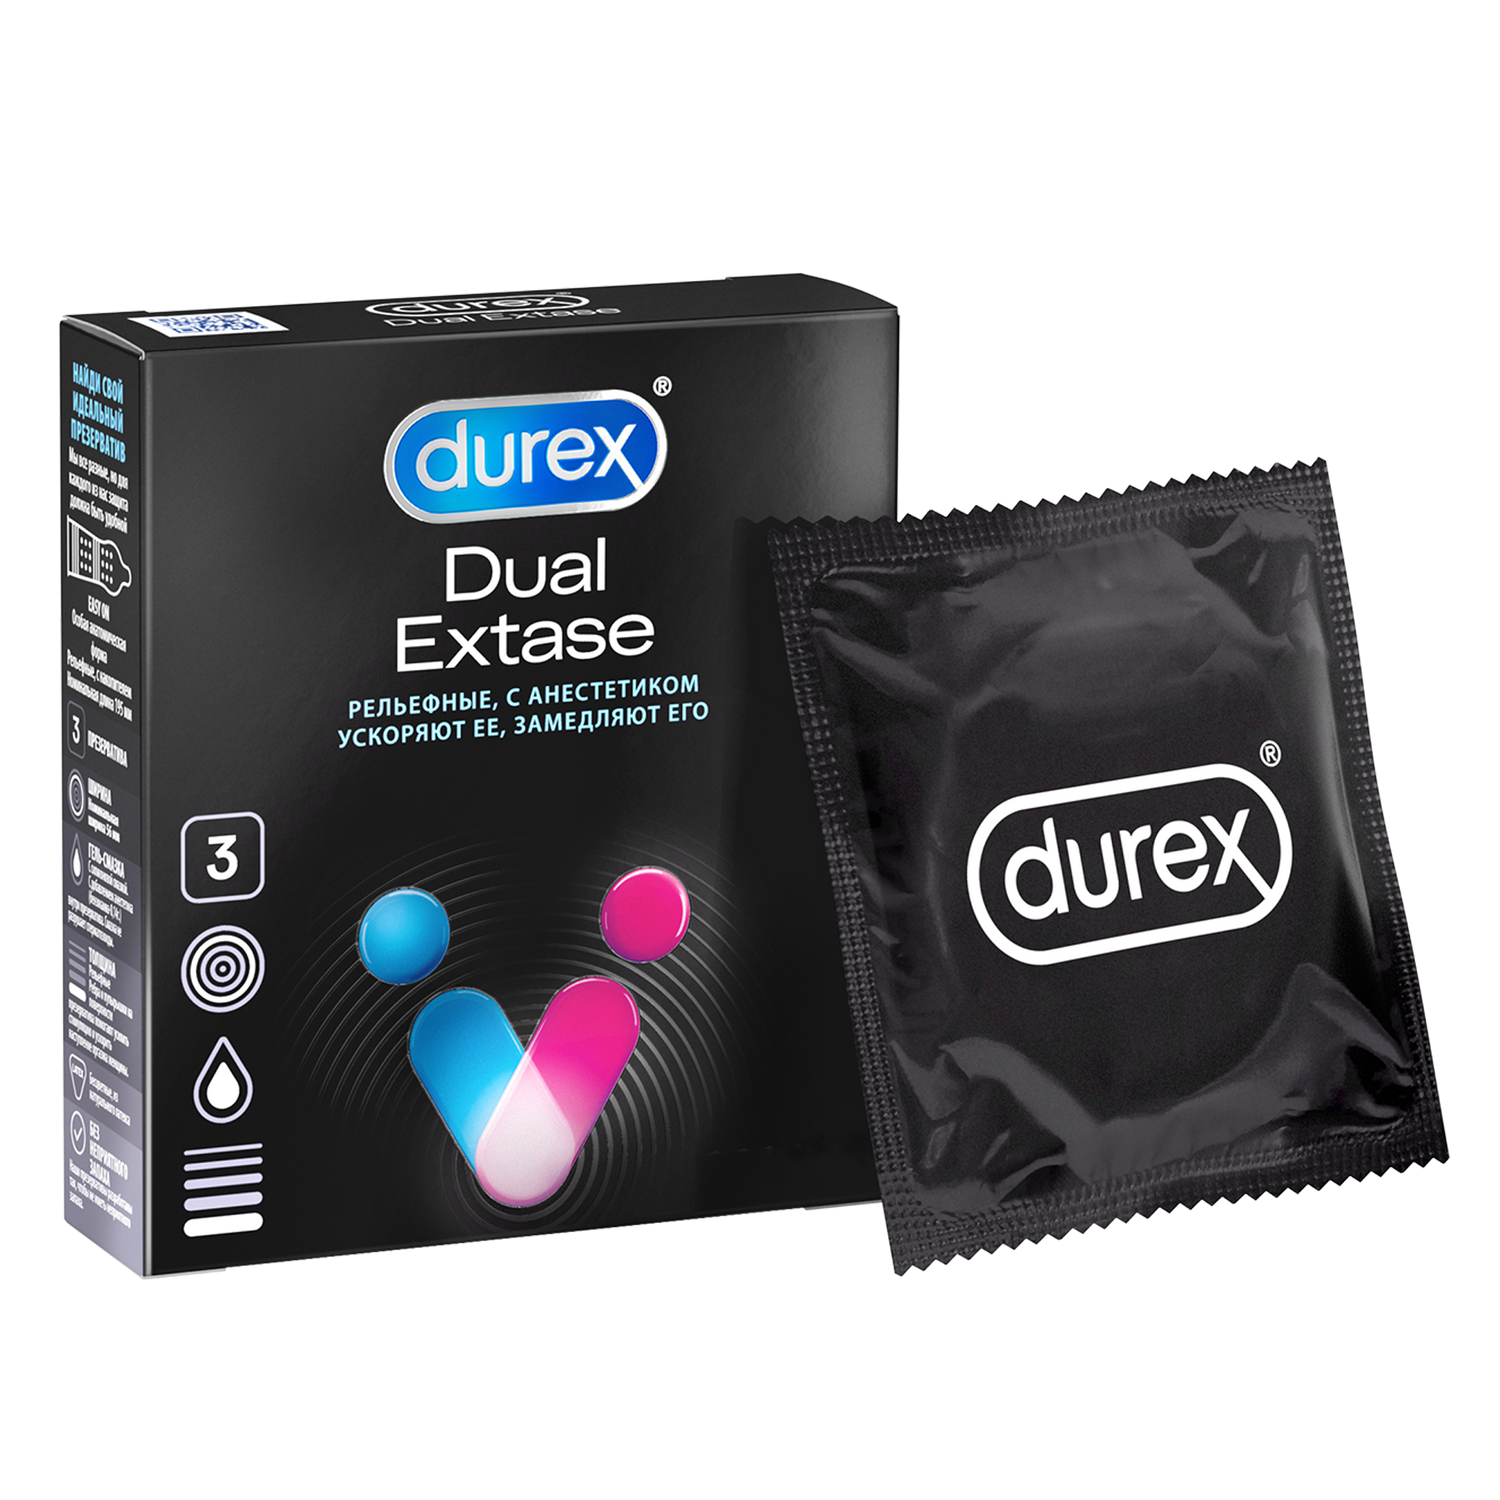 Презервативы Durex Dual Extase, рельефные с анестетиком, 3 шт. комплект презервативы durex invisible xxl ультратонкие 3 шт х 2 уп